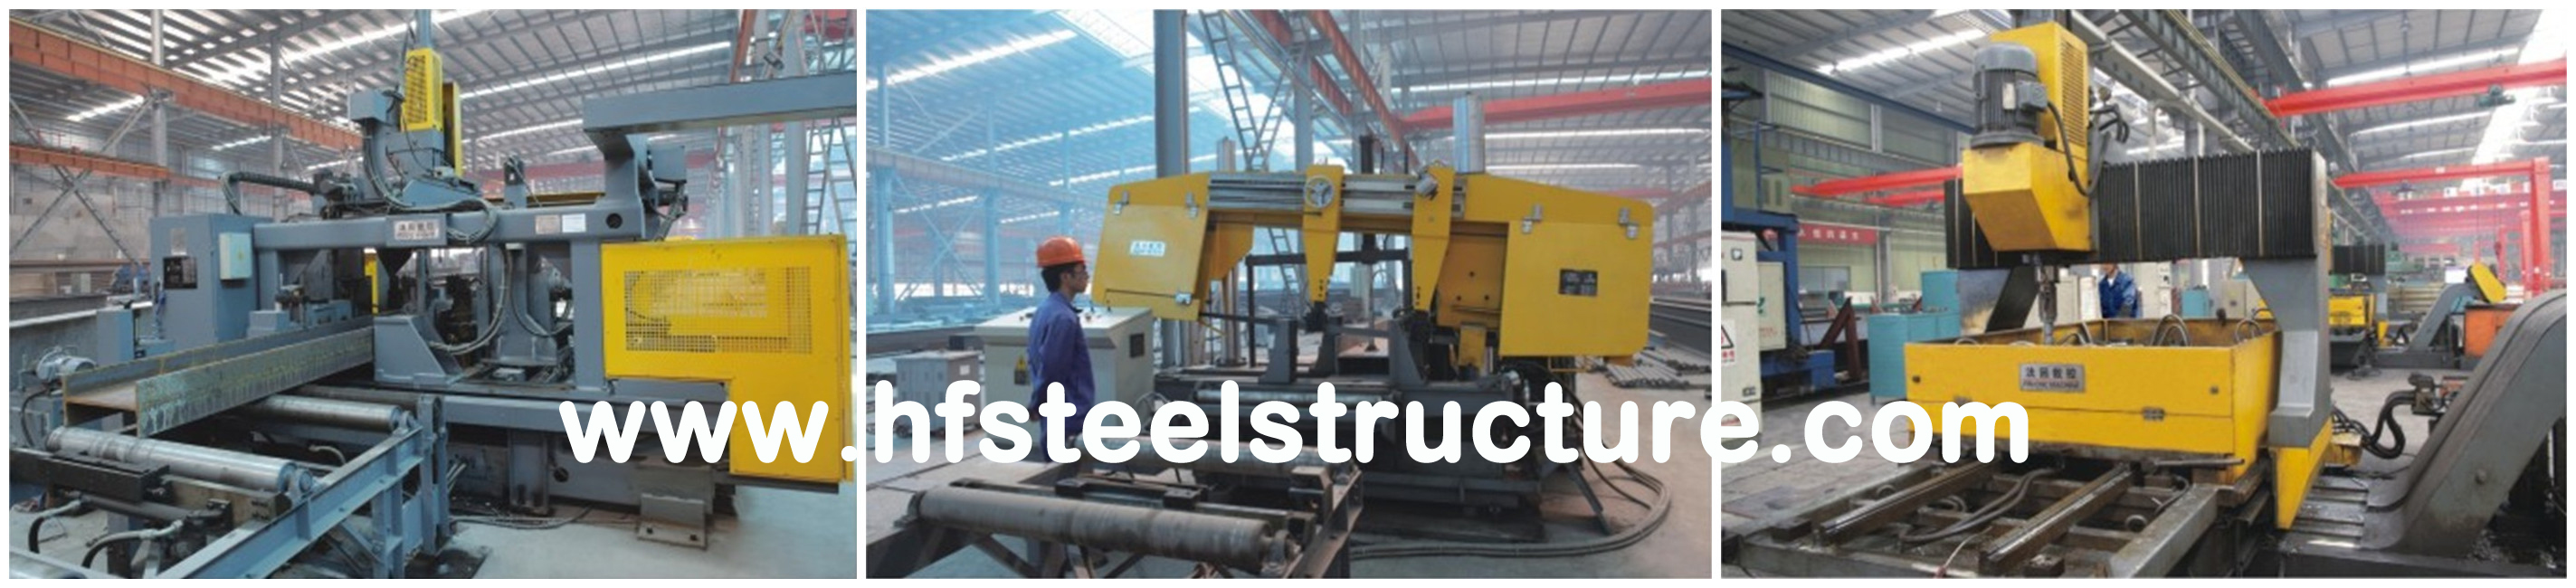 Vorfabrizierte industrielle Stahlgebäude für landwirtschaftliche und Wirtschaftsgebäude-Infrastruktur